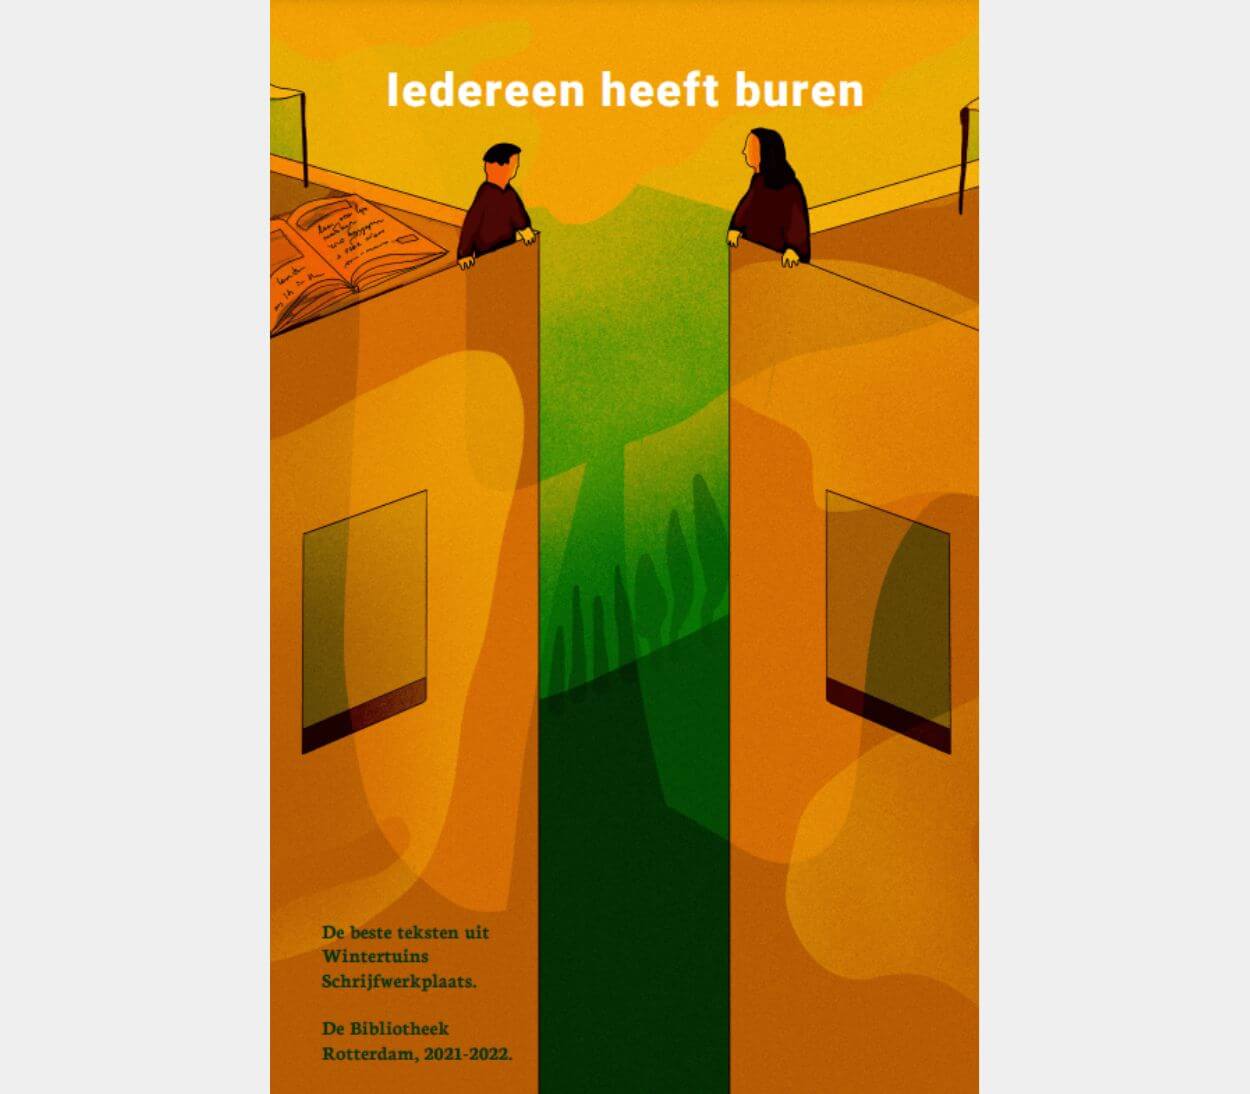 Cover van 'Iedereen heeft buren'. Illustratie van twee figuurtjes die zich in verschillende gebouwen bevinden, in gele/oranje/groene achtergrond, en naar elkaar kijken.